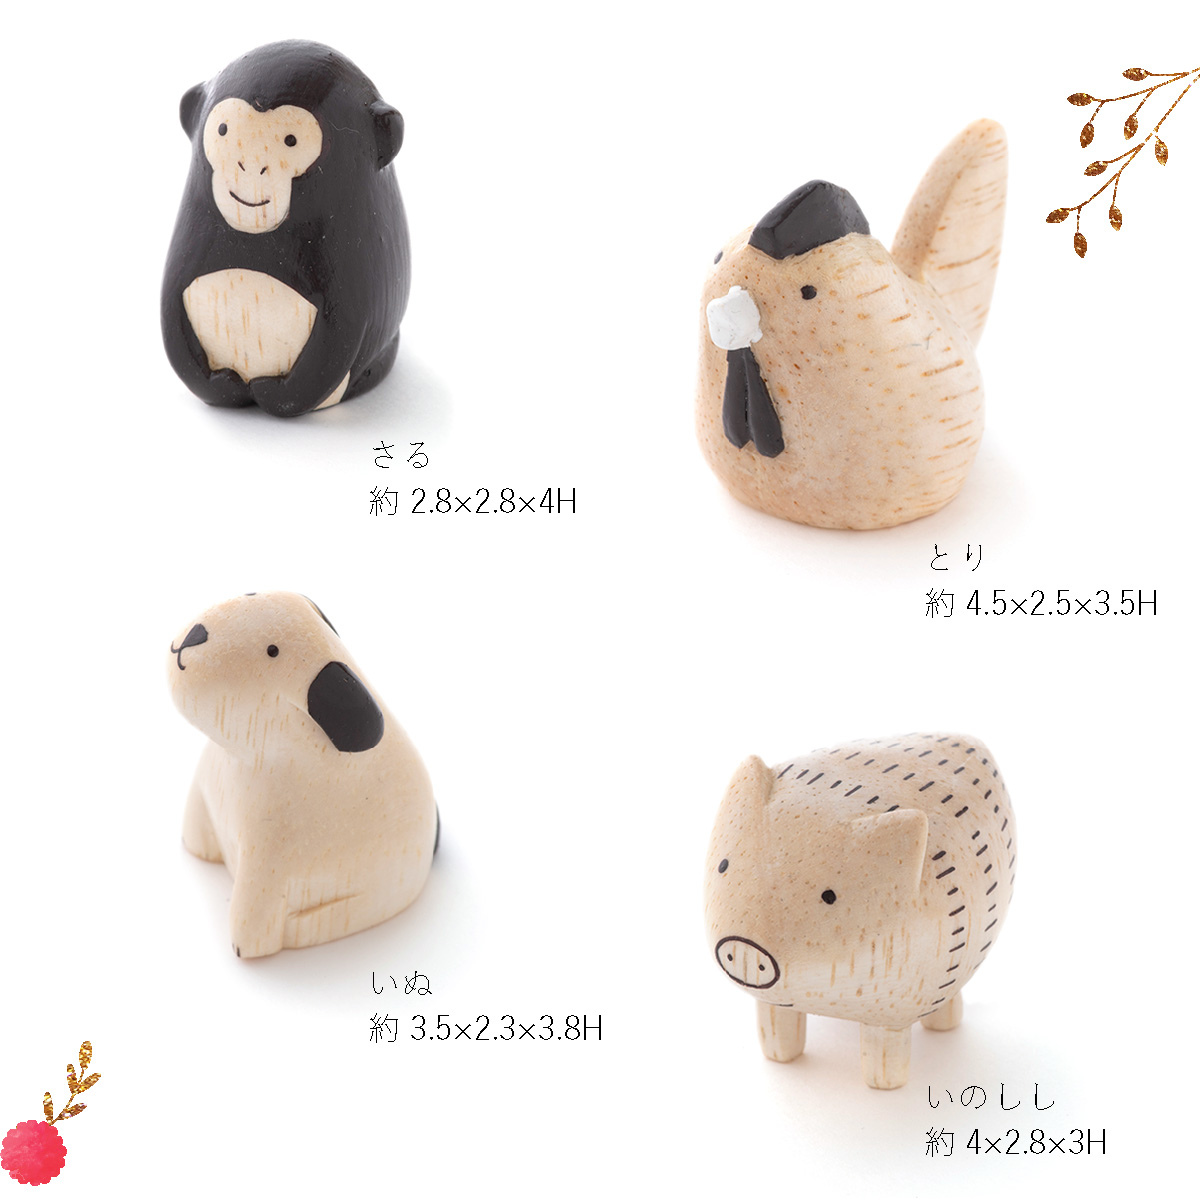 最適な材料 Amazon.co.jp: 木彫り動物インテリア - やさしいおみせ ぽ